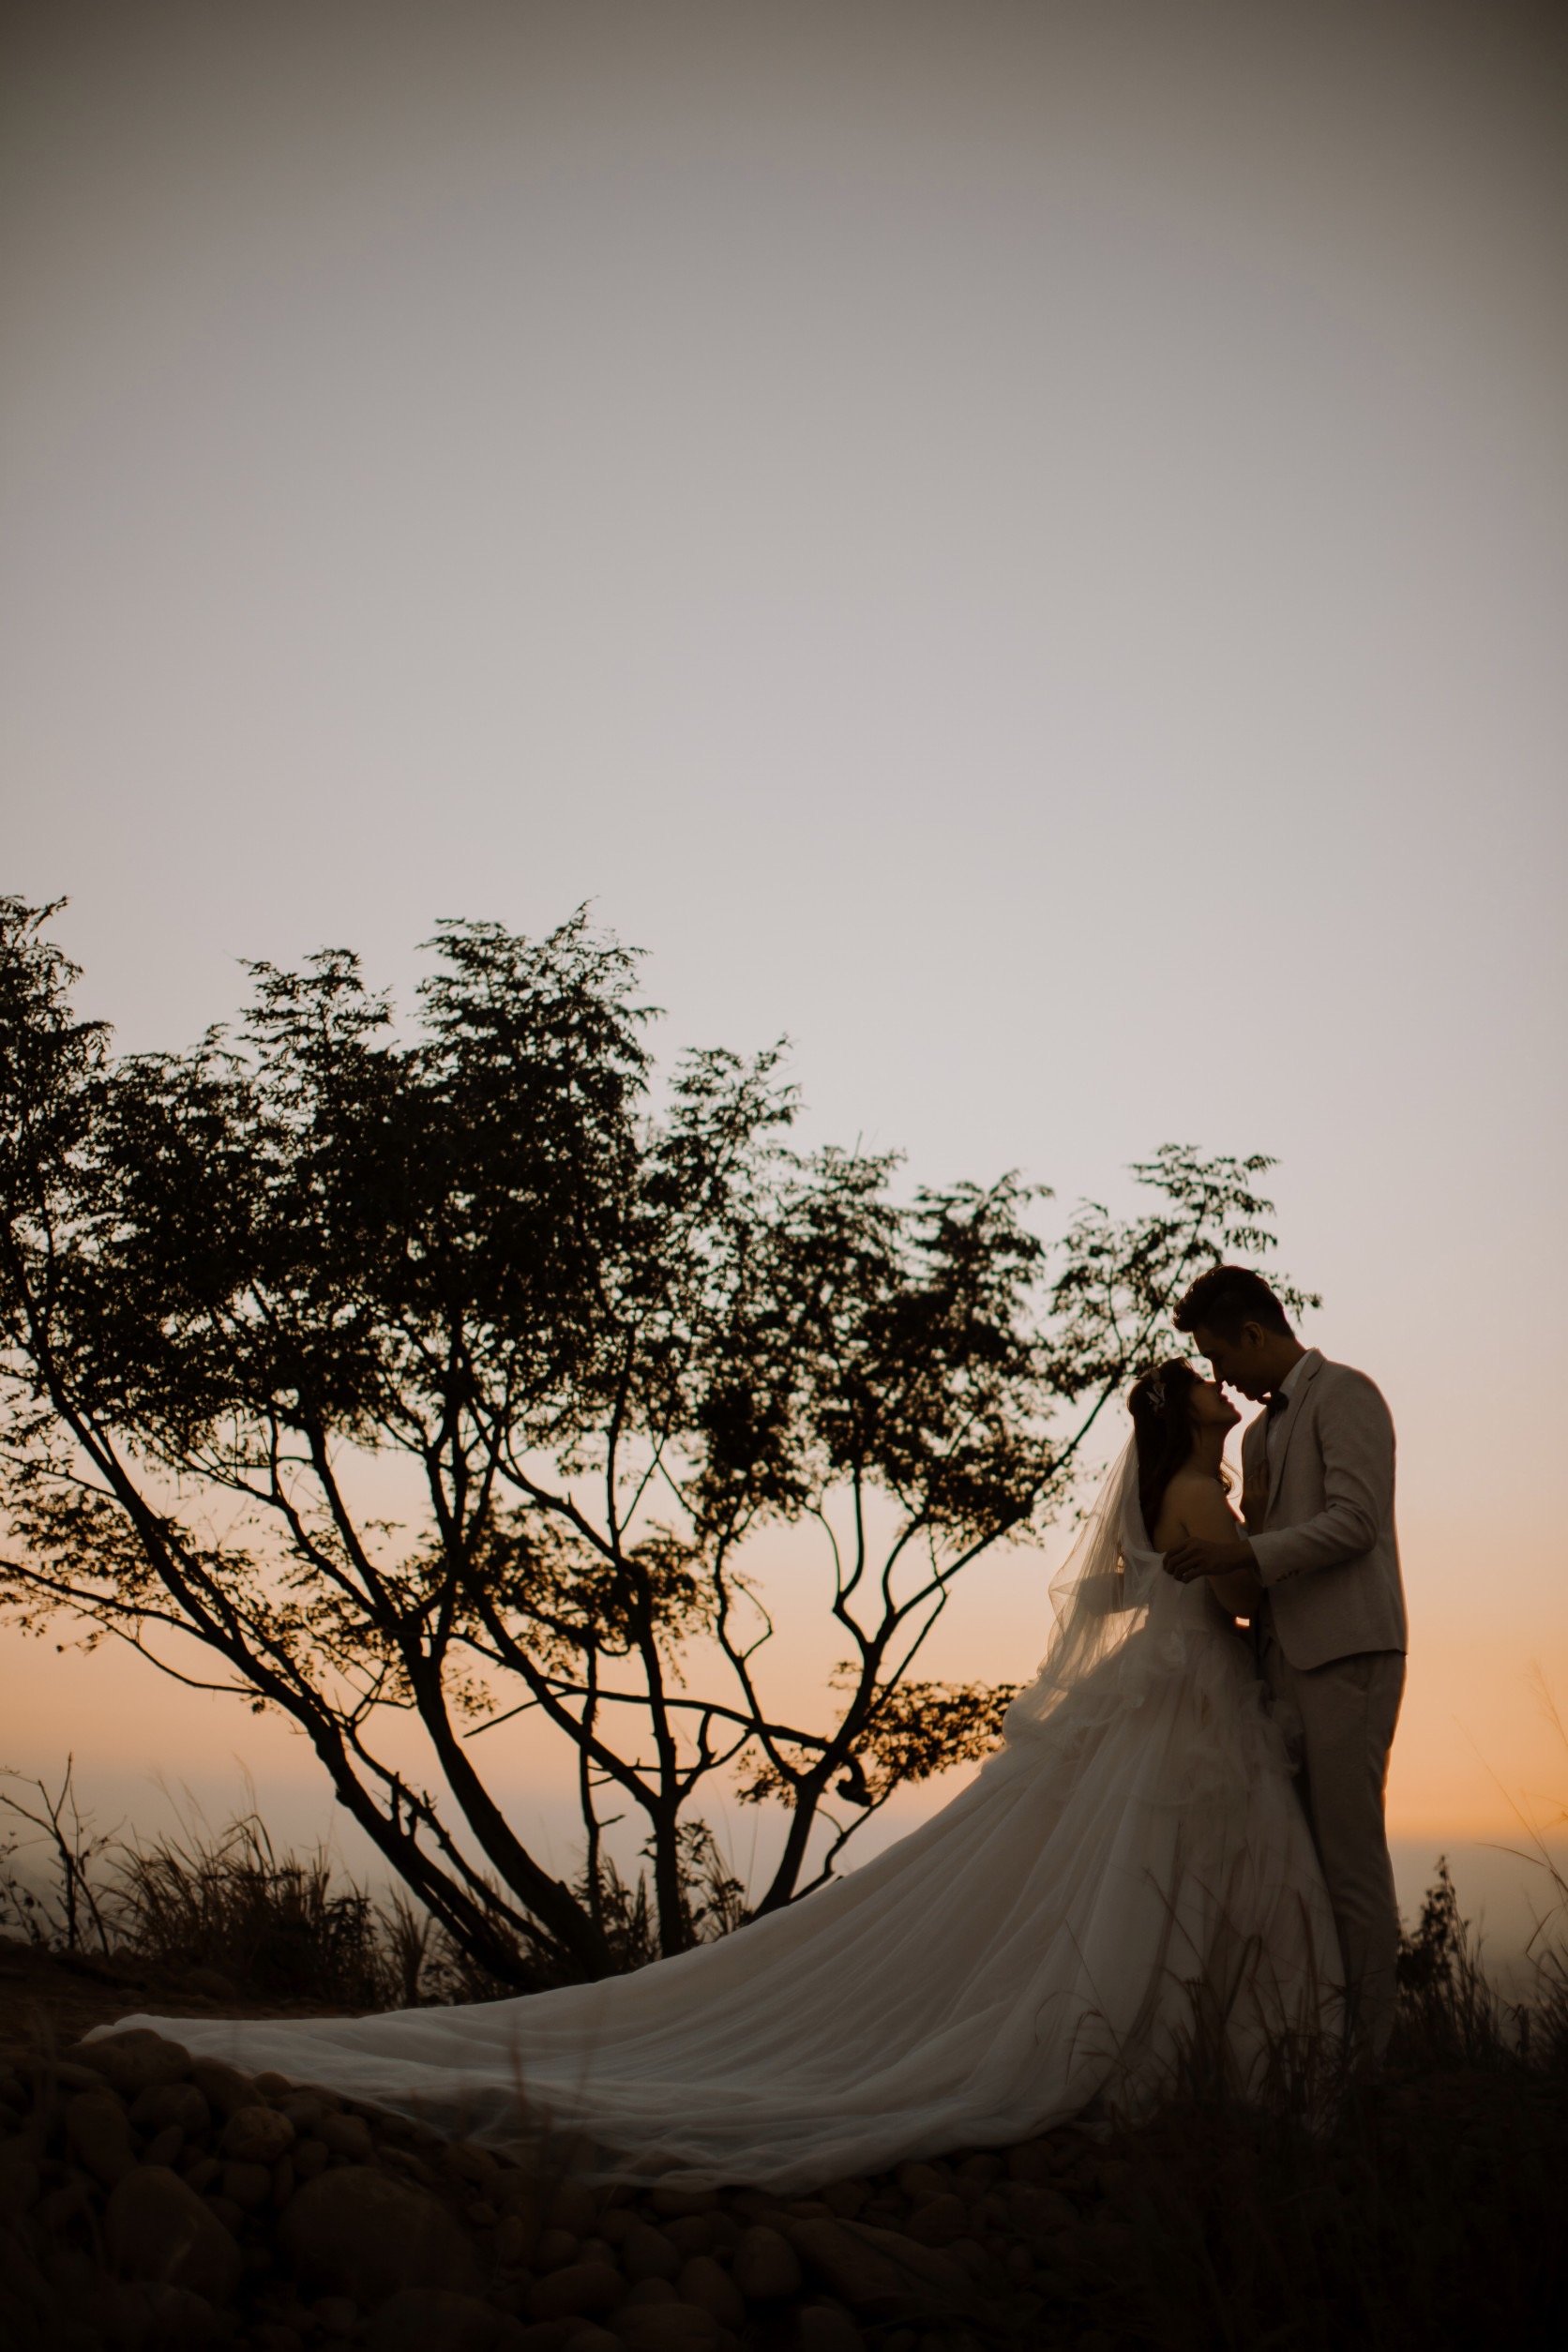 很喜歡攝影師小宇幫我們拍的婚紗照-韓式+美式婚紗攝影-婚禮廠商評價